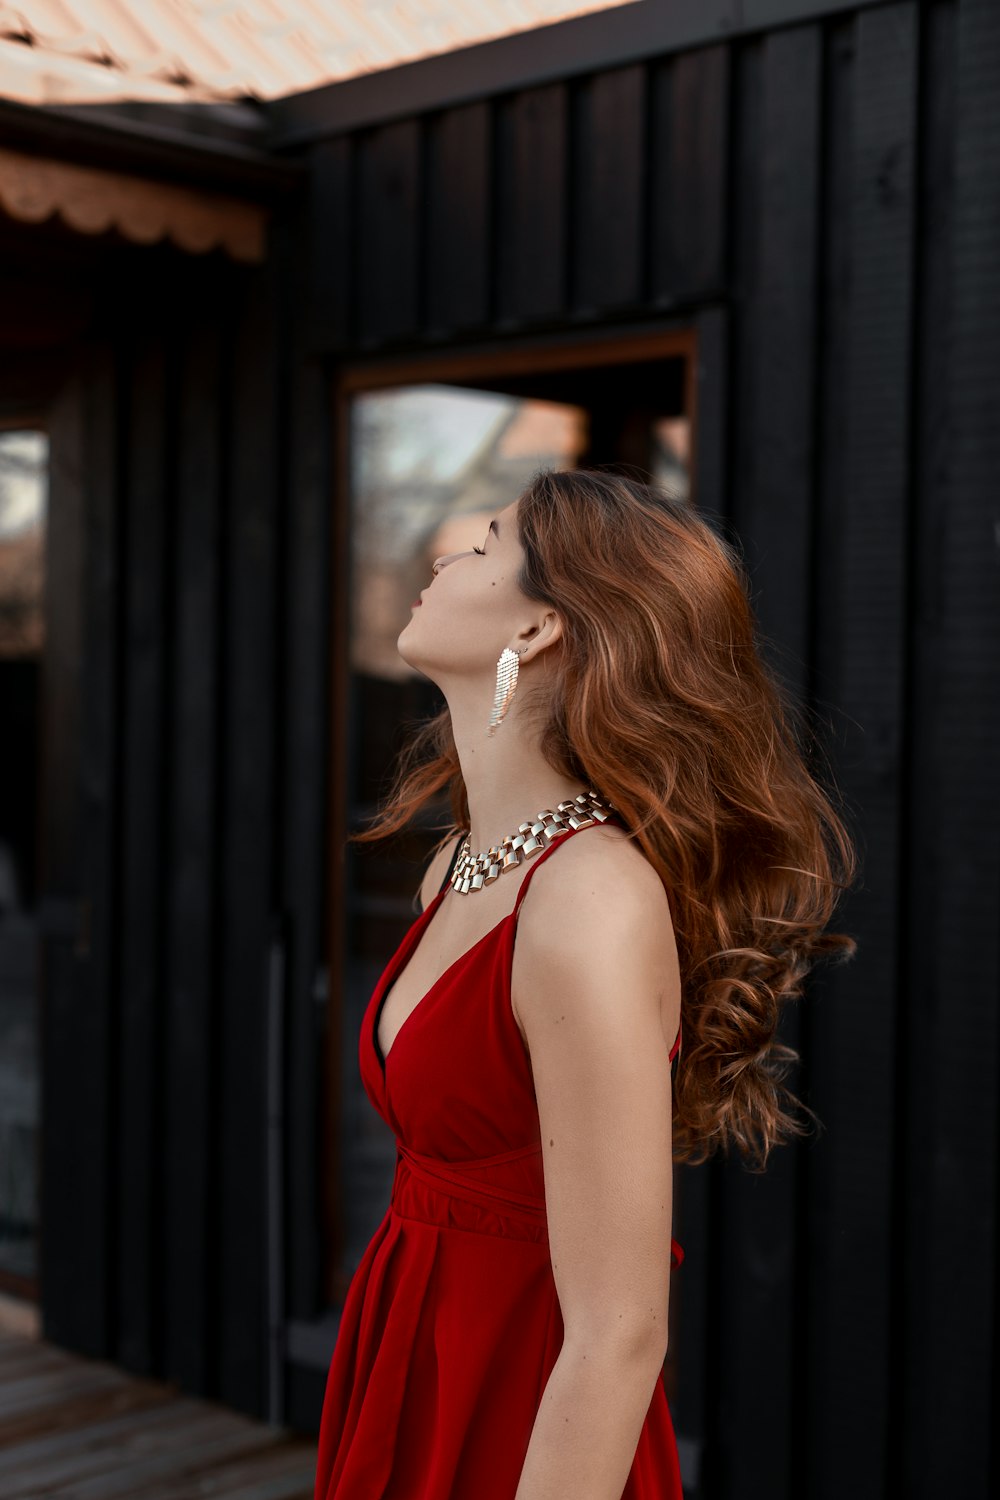 Une femme en robe rouge levant les yeux